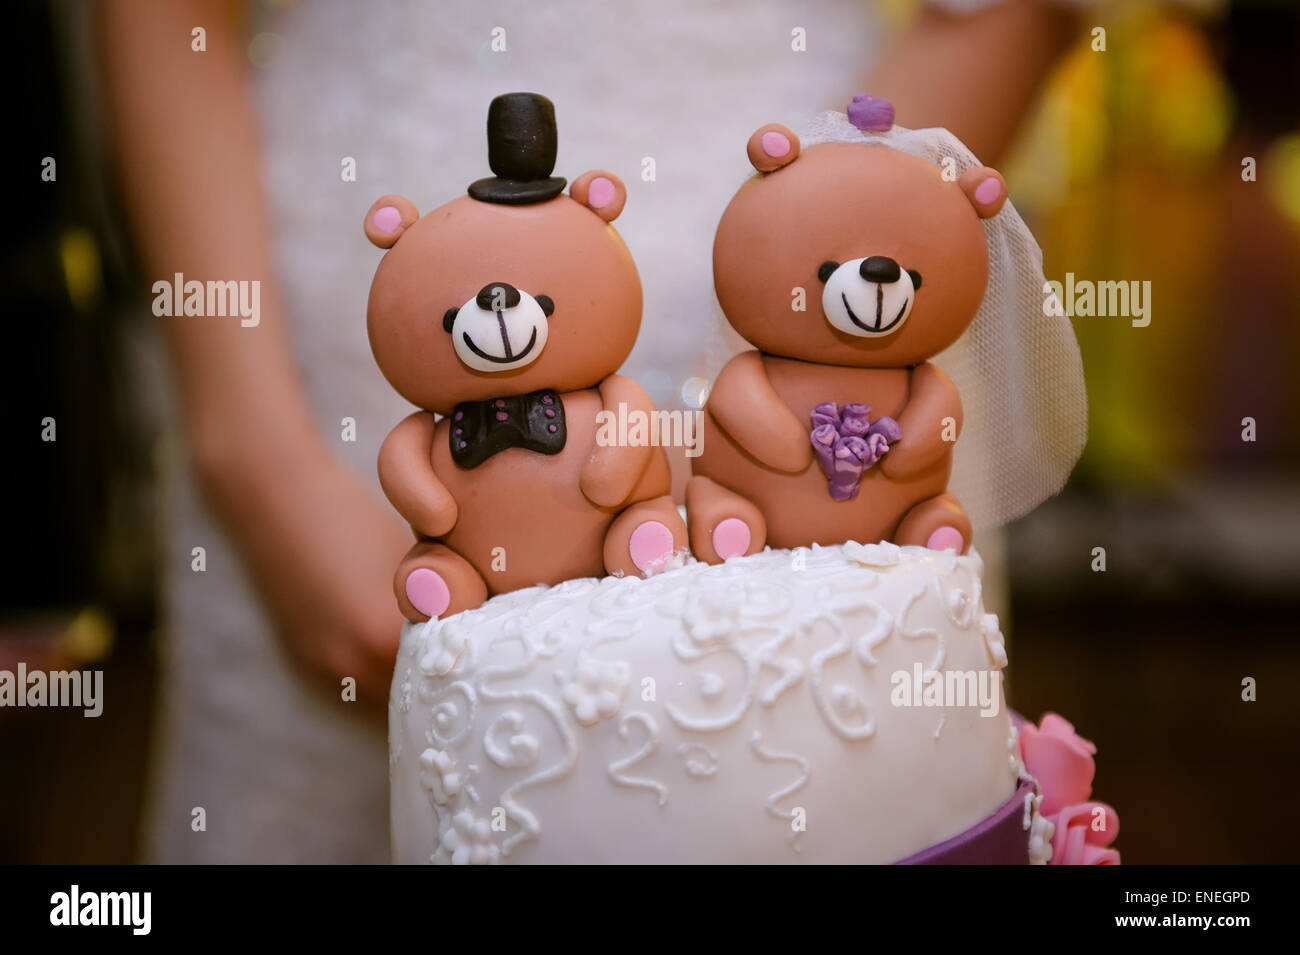 Beau gâteau de mariage avec un ours en haut Banque D'Images